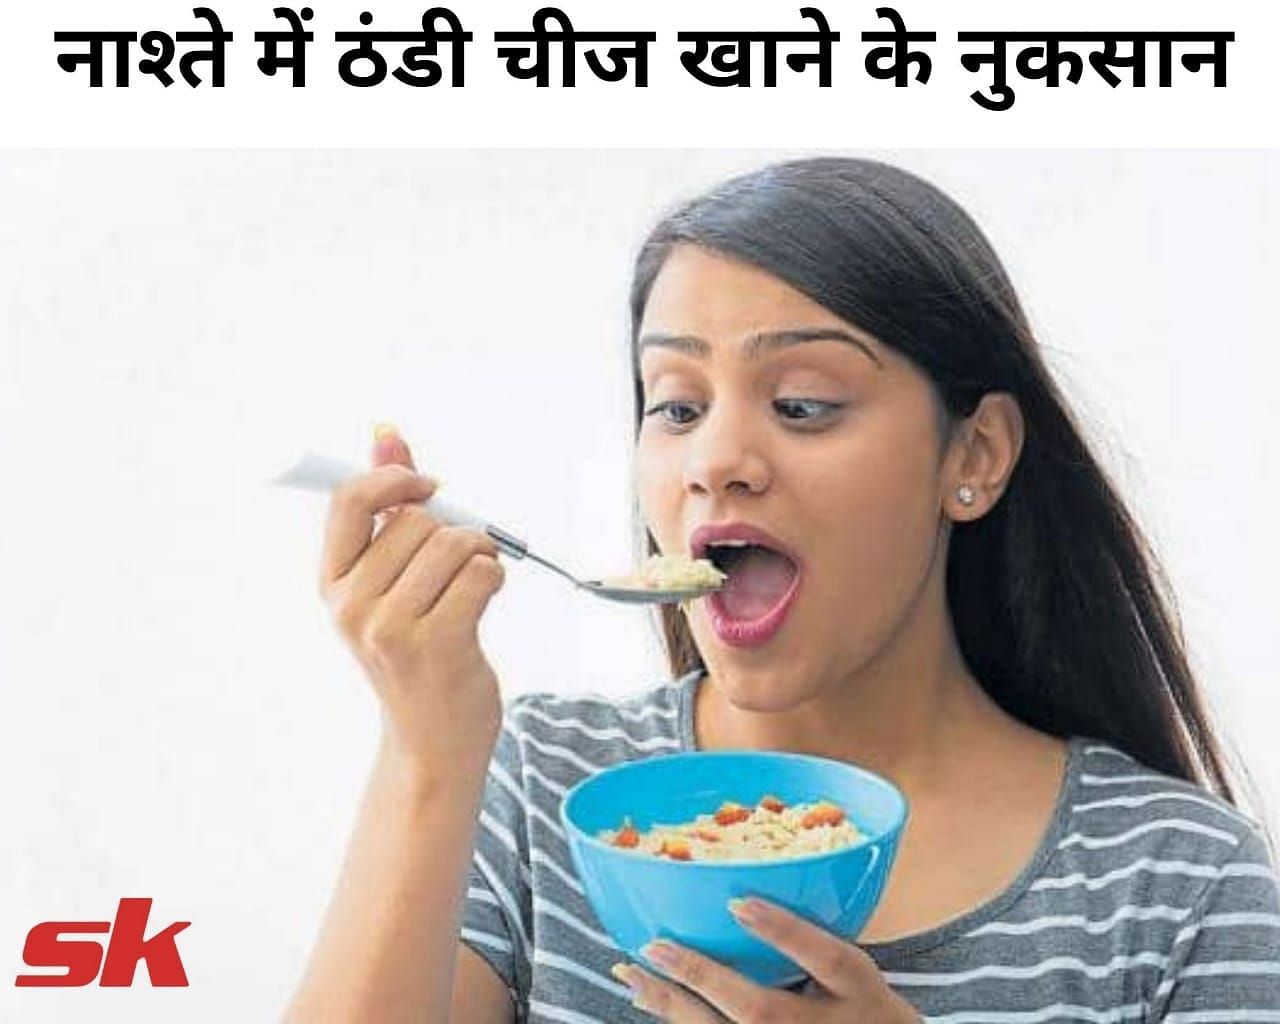 नाश्ते में ठंडी चीज खाने के नुकसान (फोटो - sportskeeda hindi)